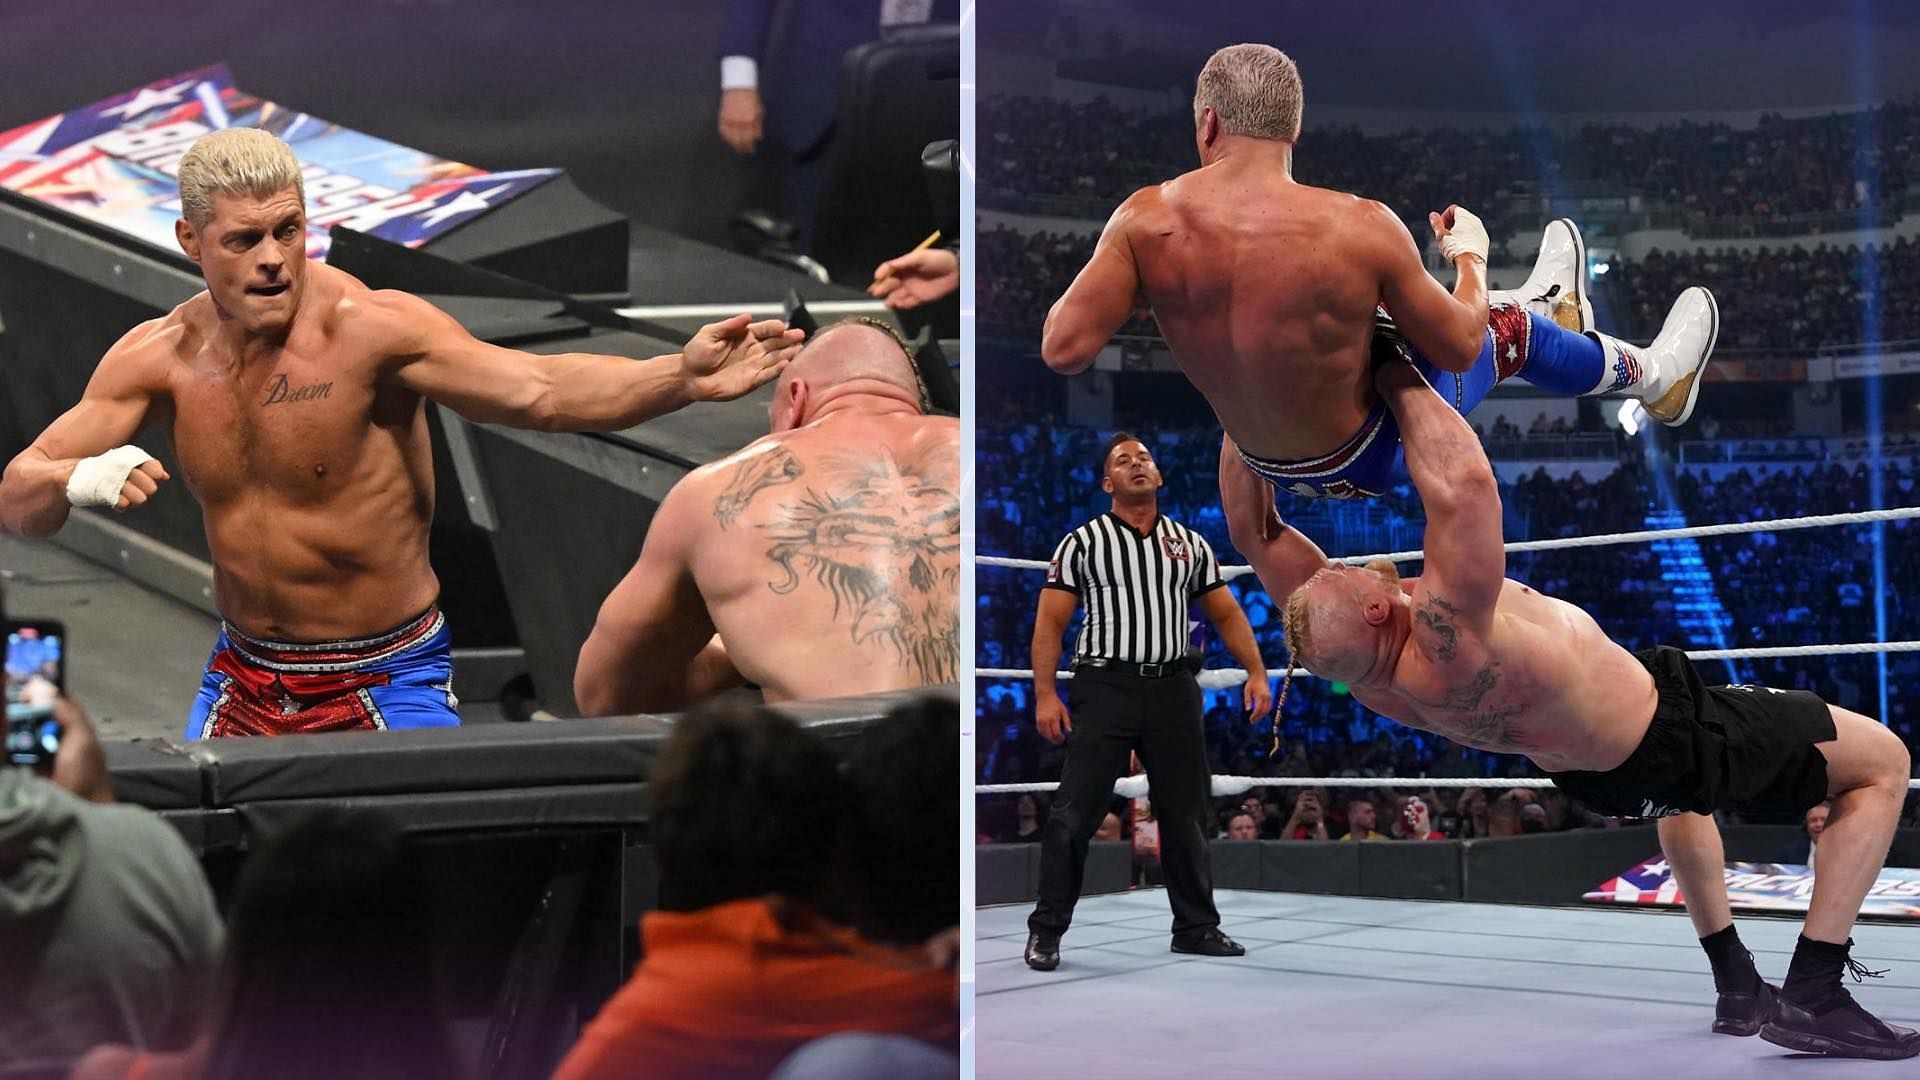 Cody Rhodes and Brock Lesnar had an incredible night at WWE Backlash